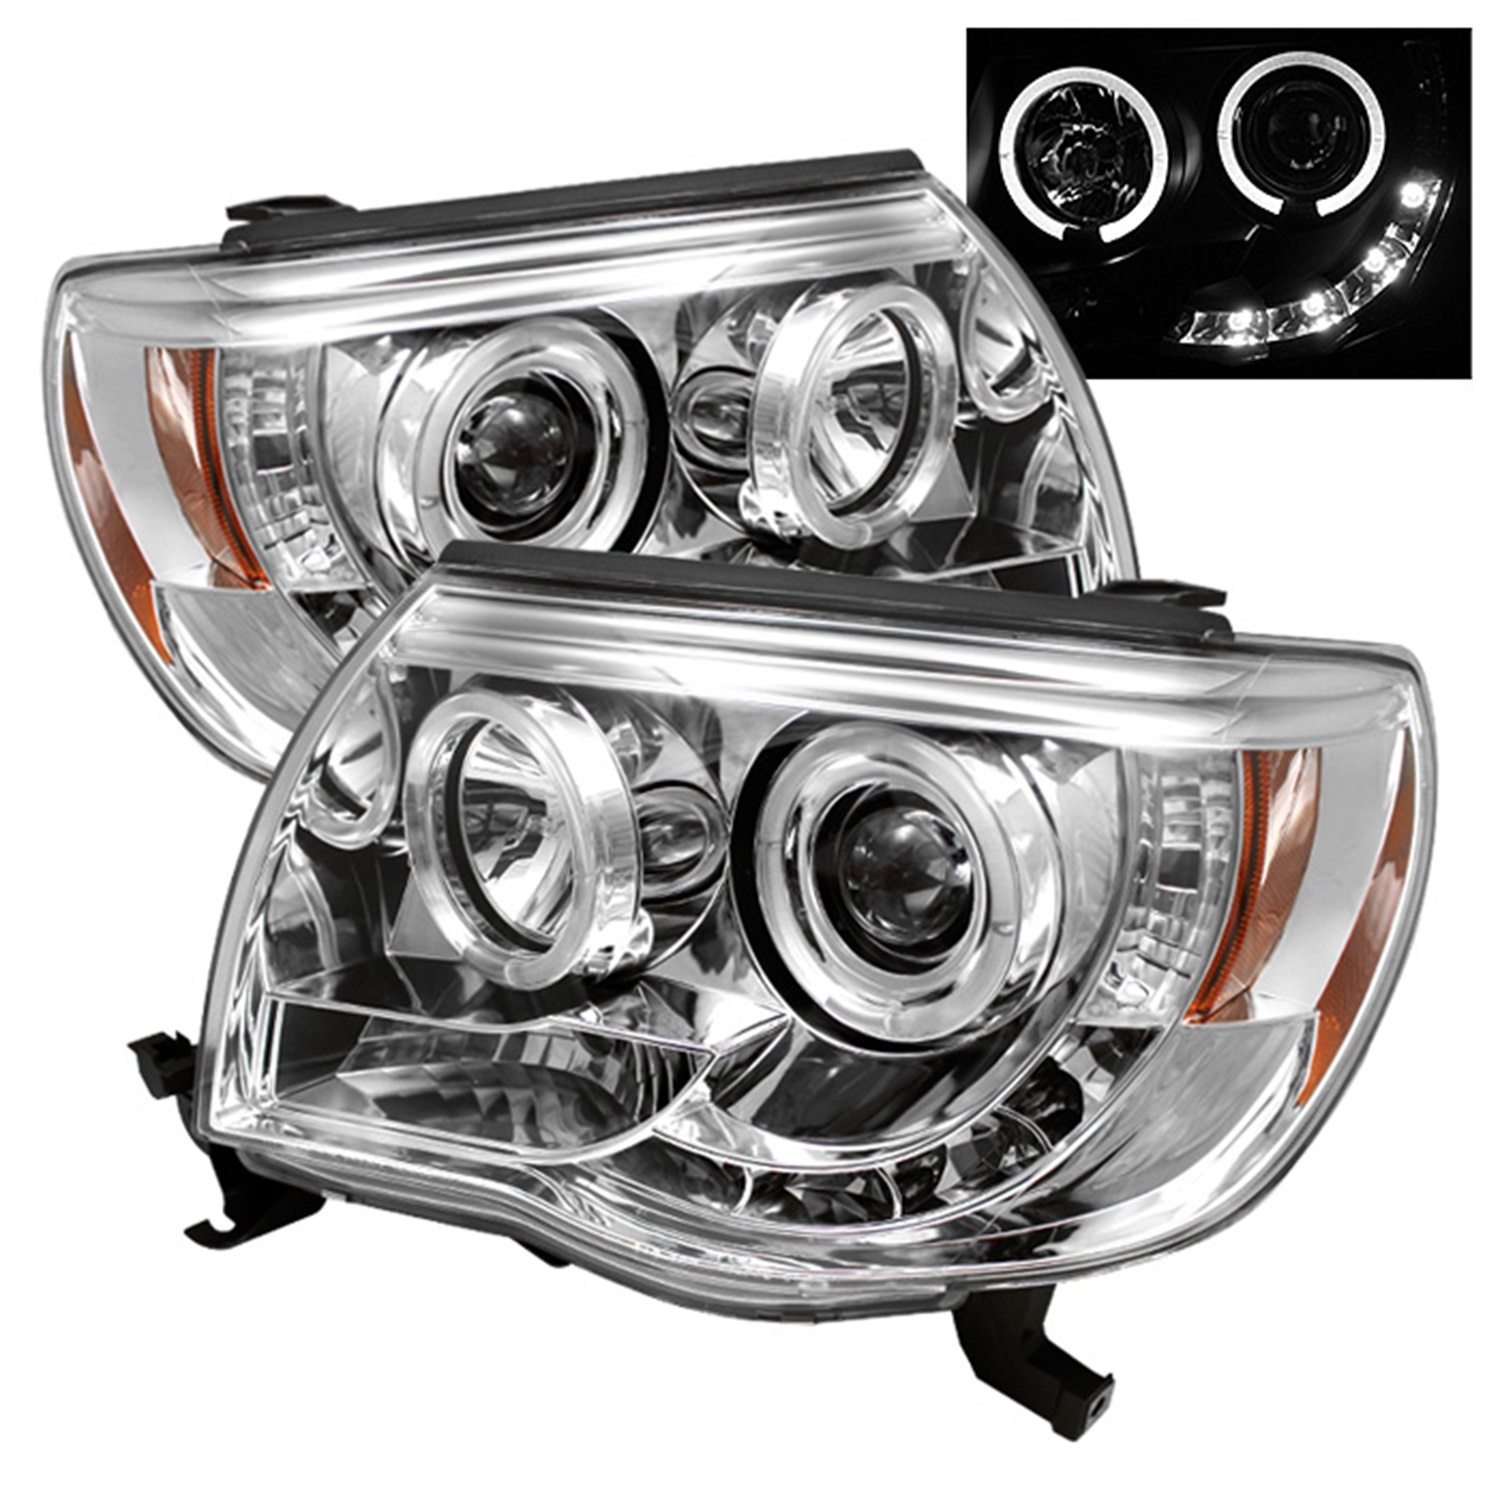 Spyder Auto 5011923 Halo LED Projector Headlights Fits 05-11 Tacoma